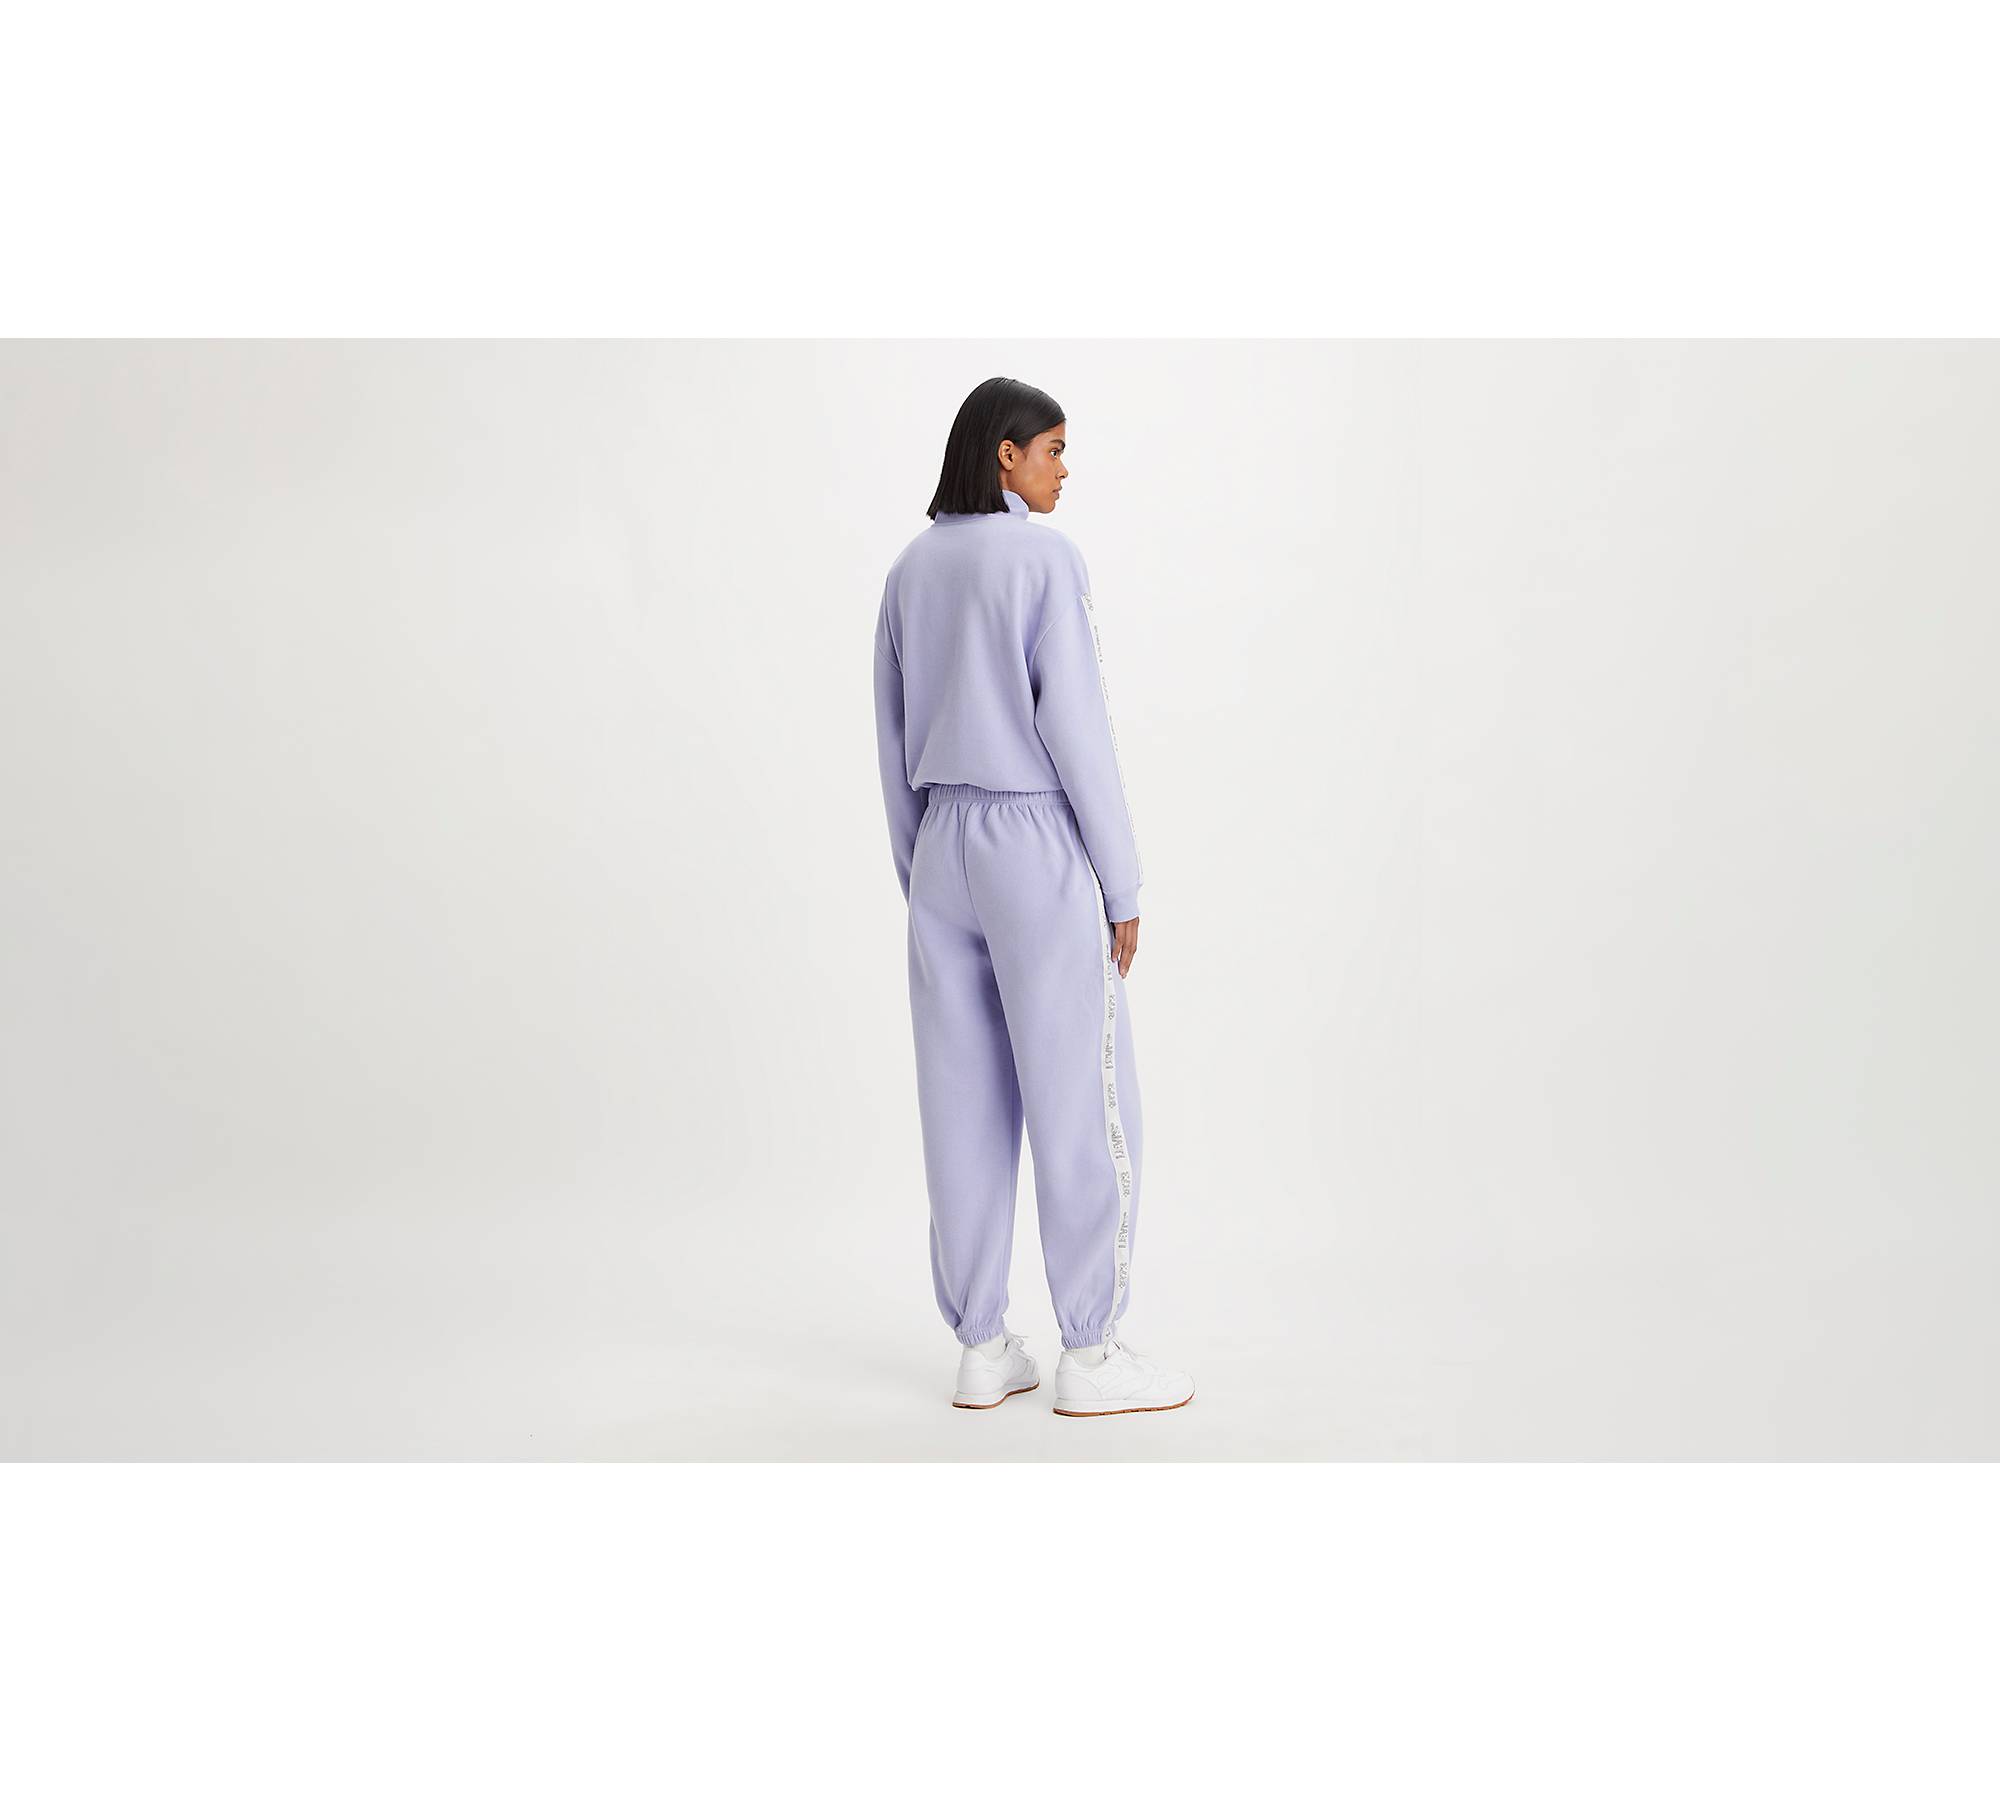 Gottex Solid Lavender Purple Active Pants Size M - 71% off